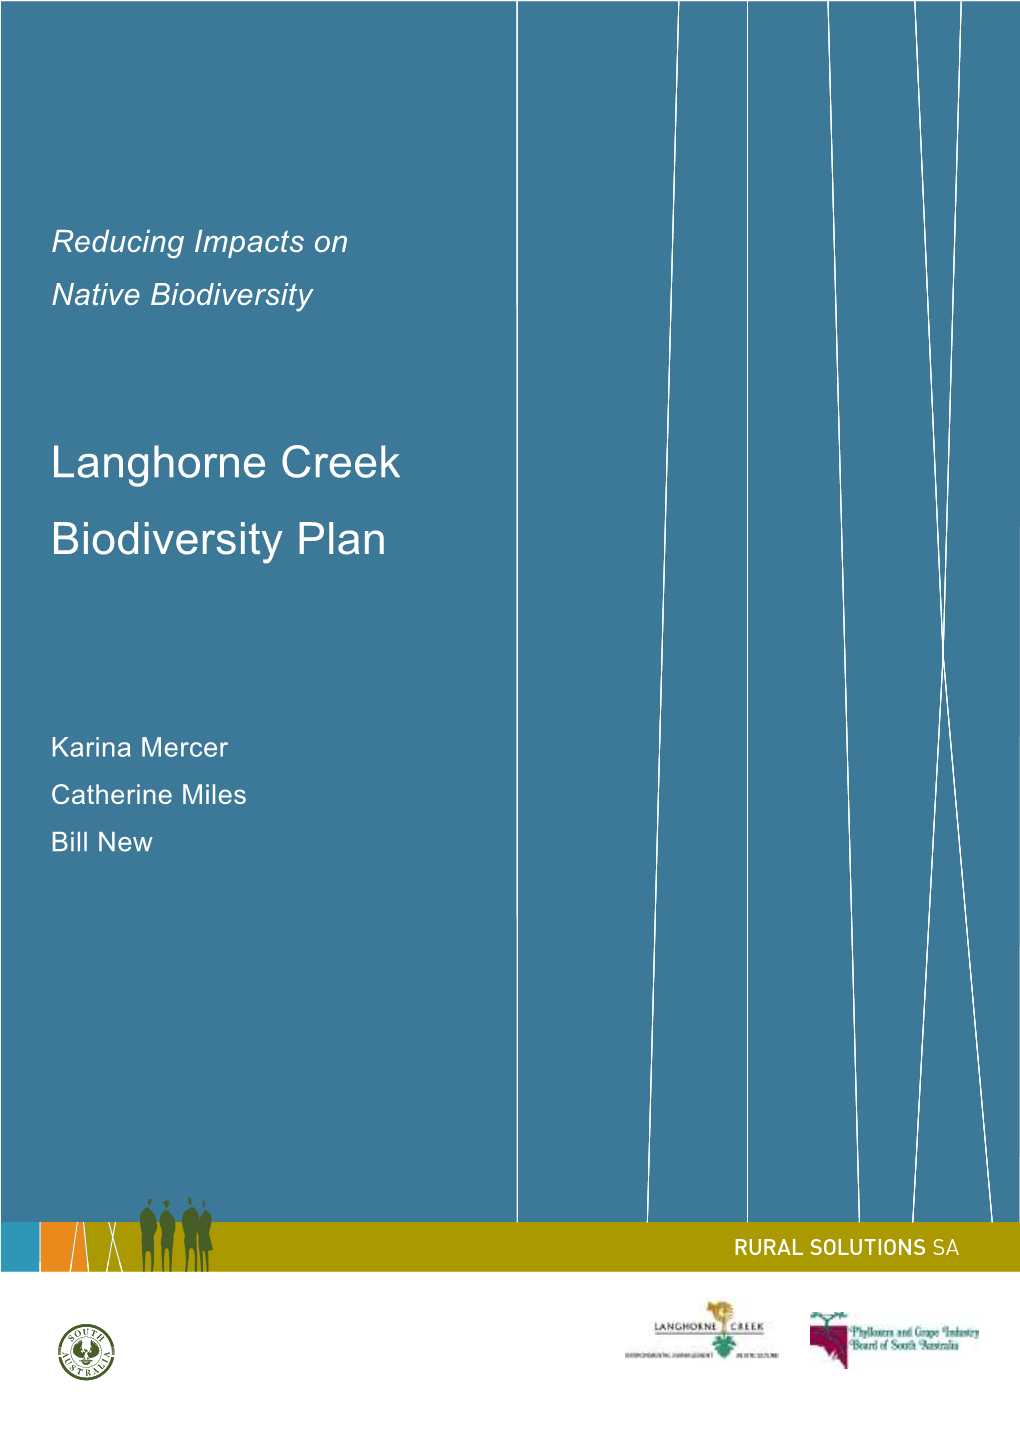 Langhorne Creek Biodiversity Plan